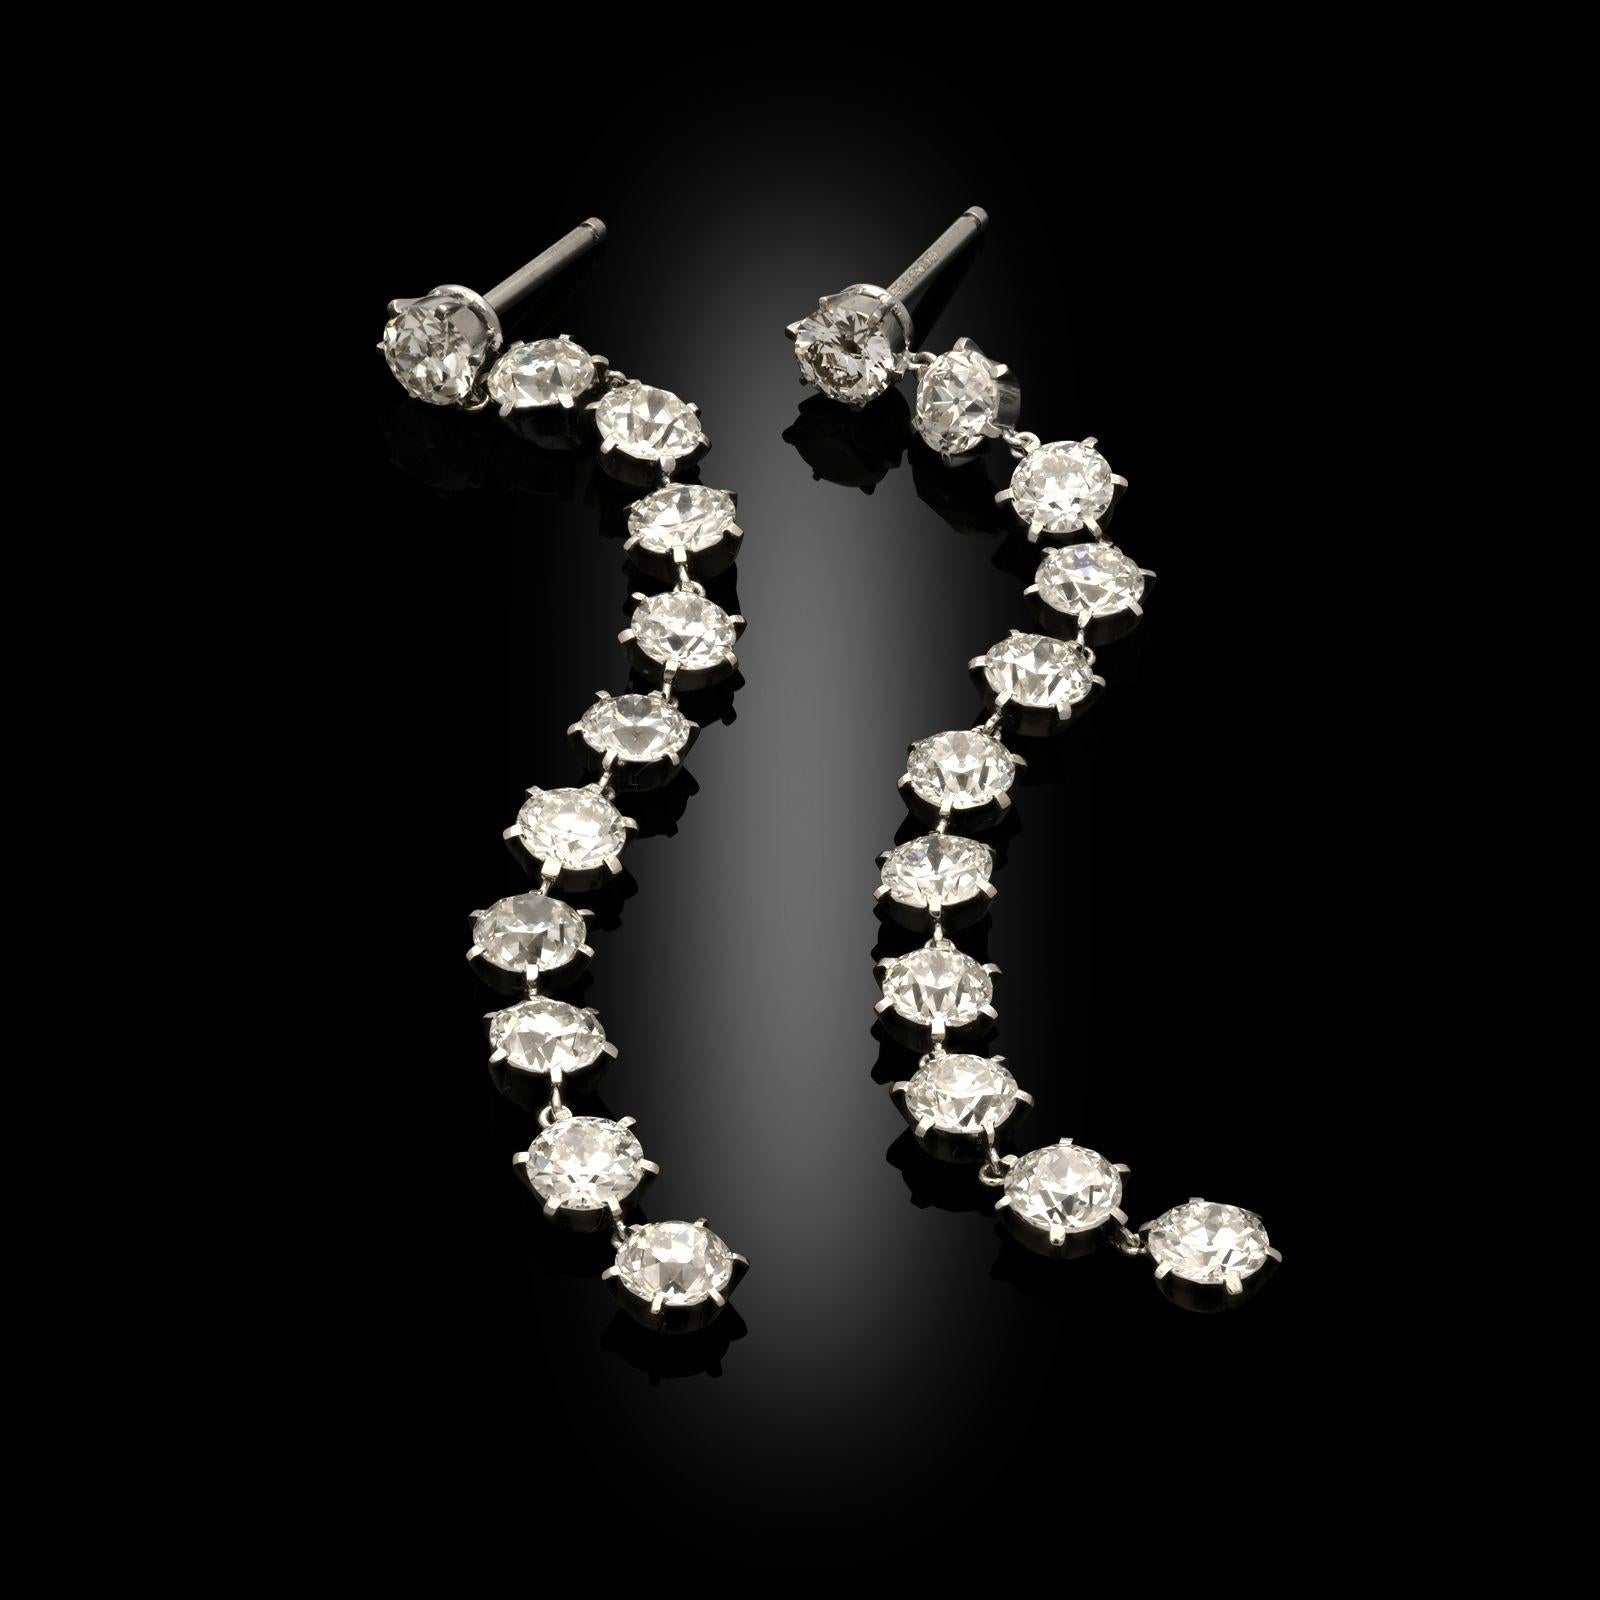 Ein Paar altgeschliffene Diamanttropfenohrringe von Hancocks. Diese Ohrringe sind als eine einzige lange Reihe von Diamanten mit altem europäischem Schliff gestaltet, jeder in einer Platinfassung mit Gliederung zwischen den einzelnen Diamanten.